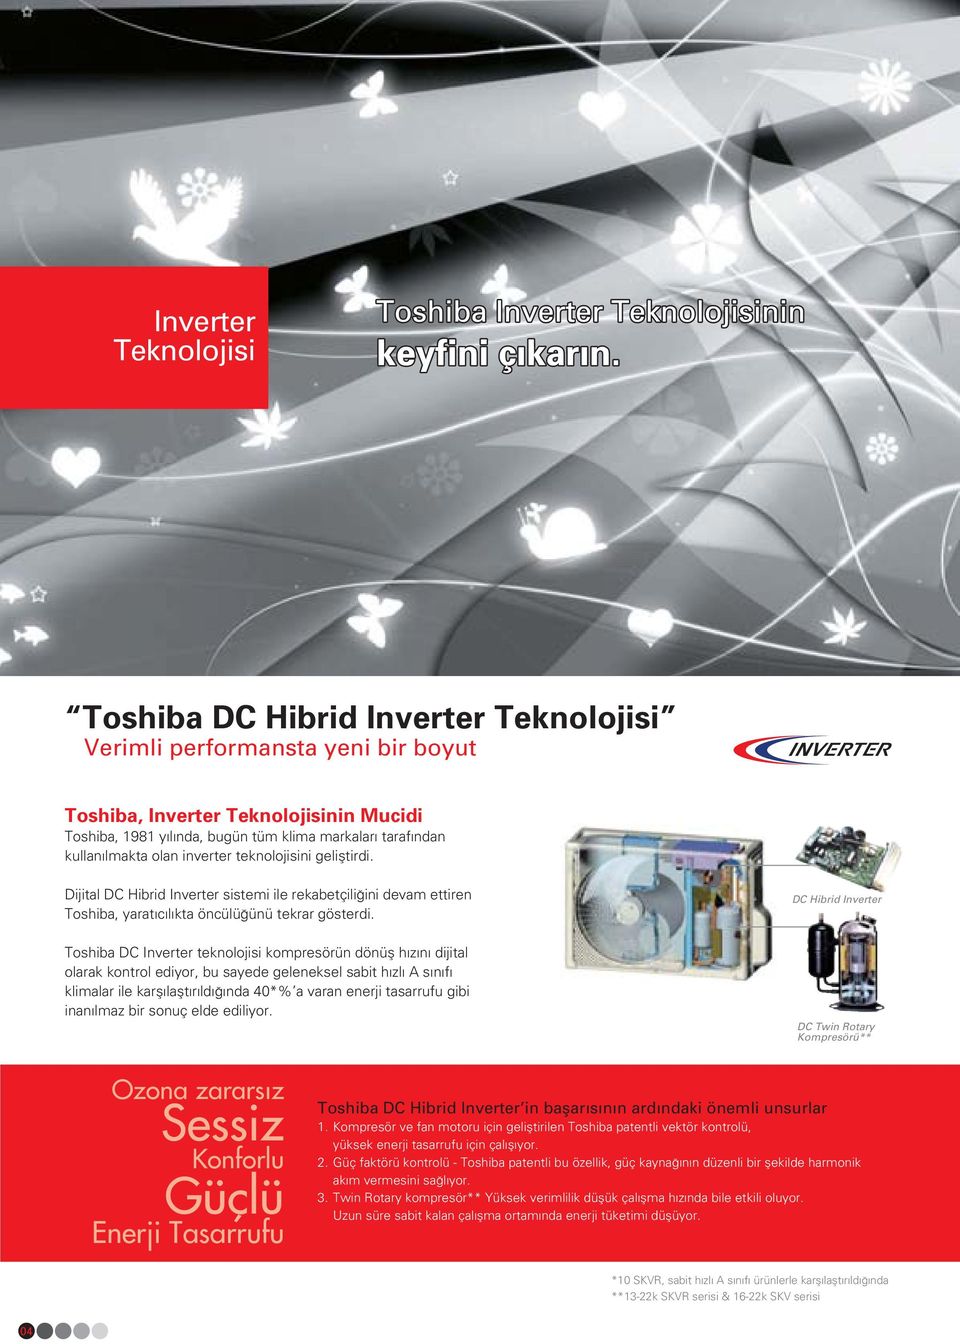 DC Hibrid Inverter Toshiba DC Inverter teknolojisi kompresörün dönüfl h z n dijital olarak kontrol ediyor, bu sayede geleneksel sabit h zl s n f klimalar ile karfl laflt r ld nda 40*% a varan enerji